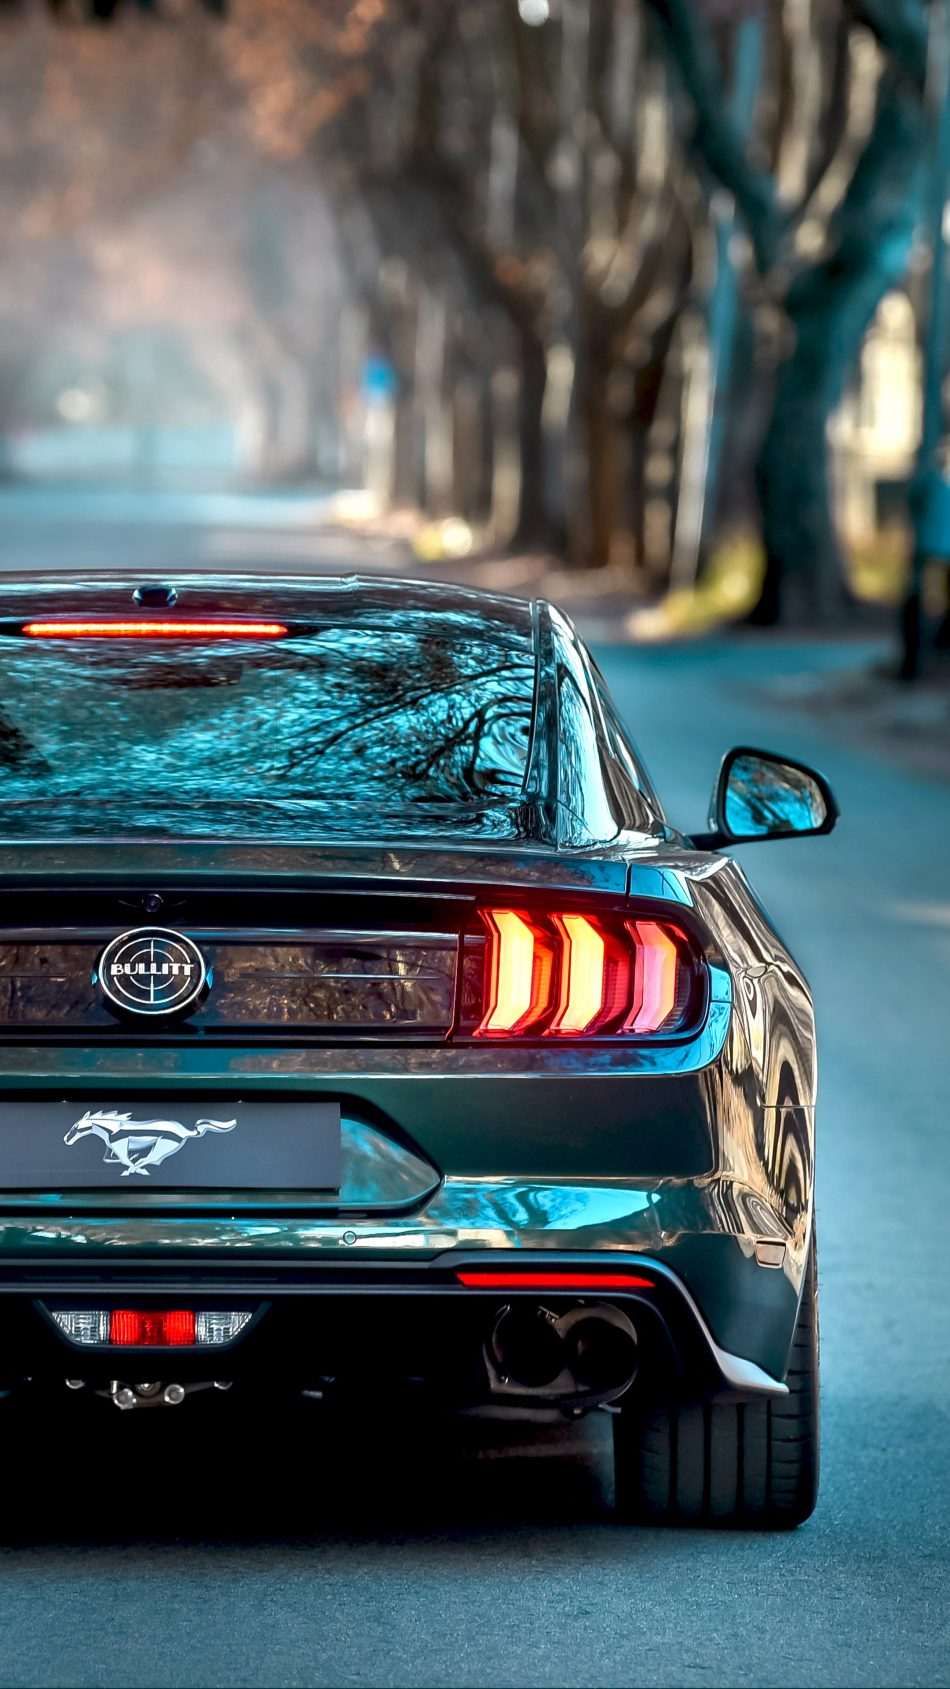 Ford Mustang Bullitt 2019 4k Ultra Hd Mobile Wallpaper - Ford Mustang Gt 2019 - HD Wallpaper 